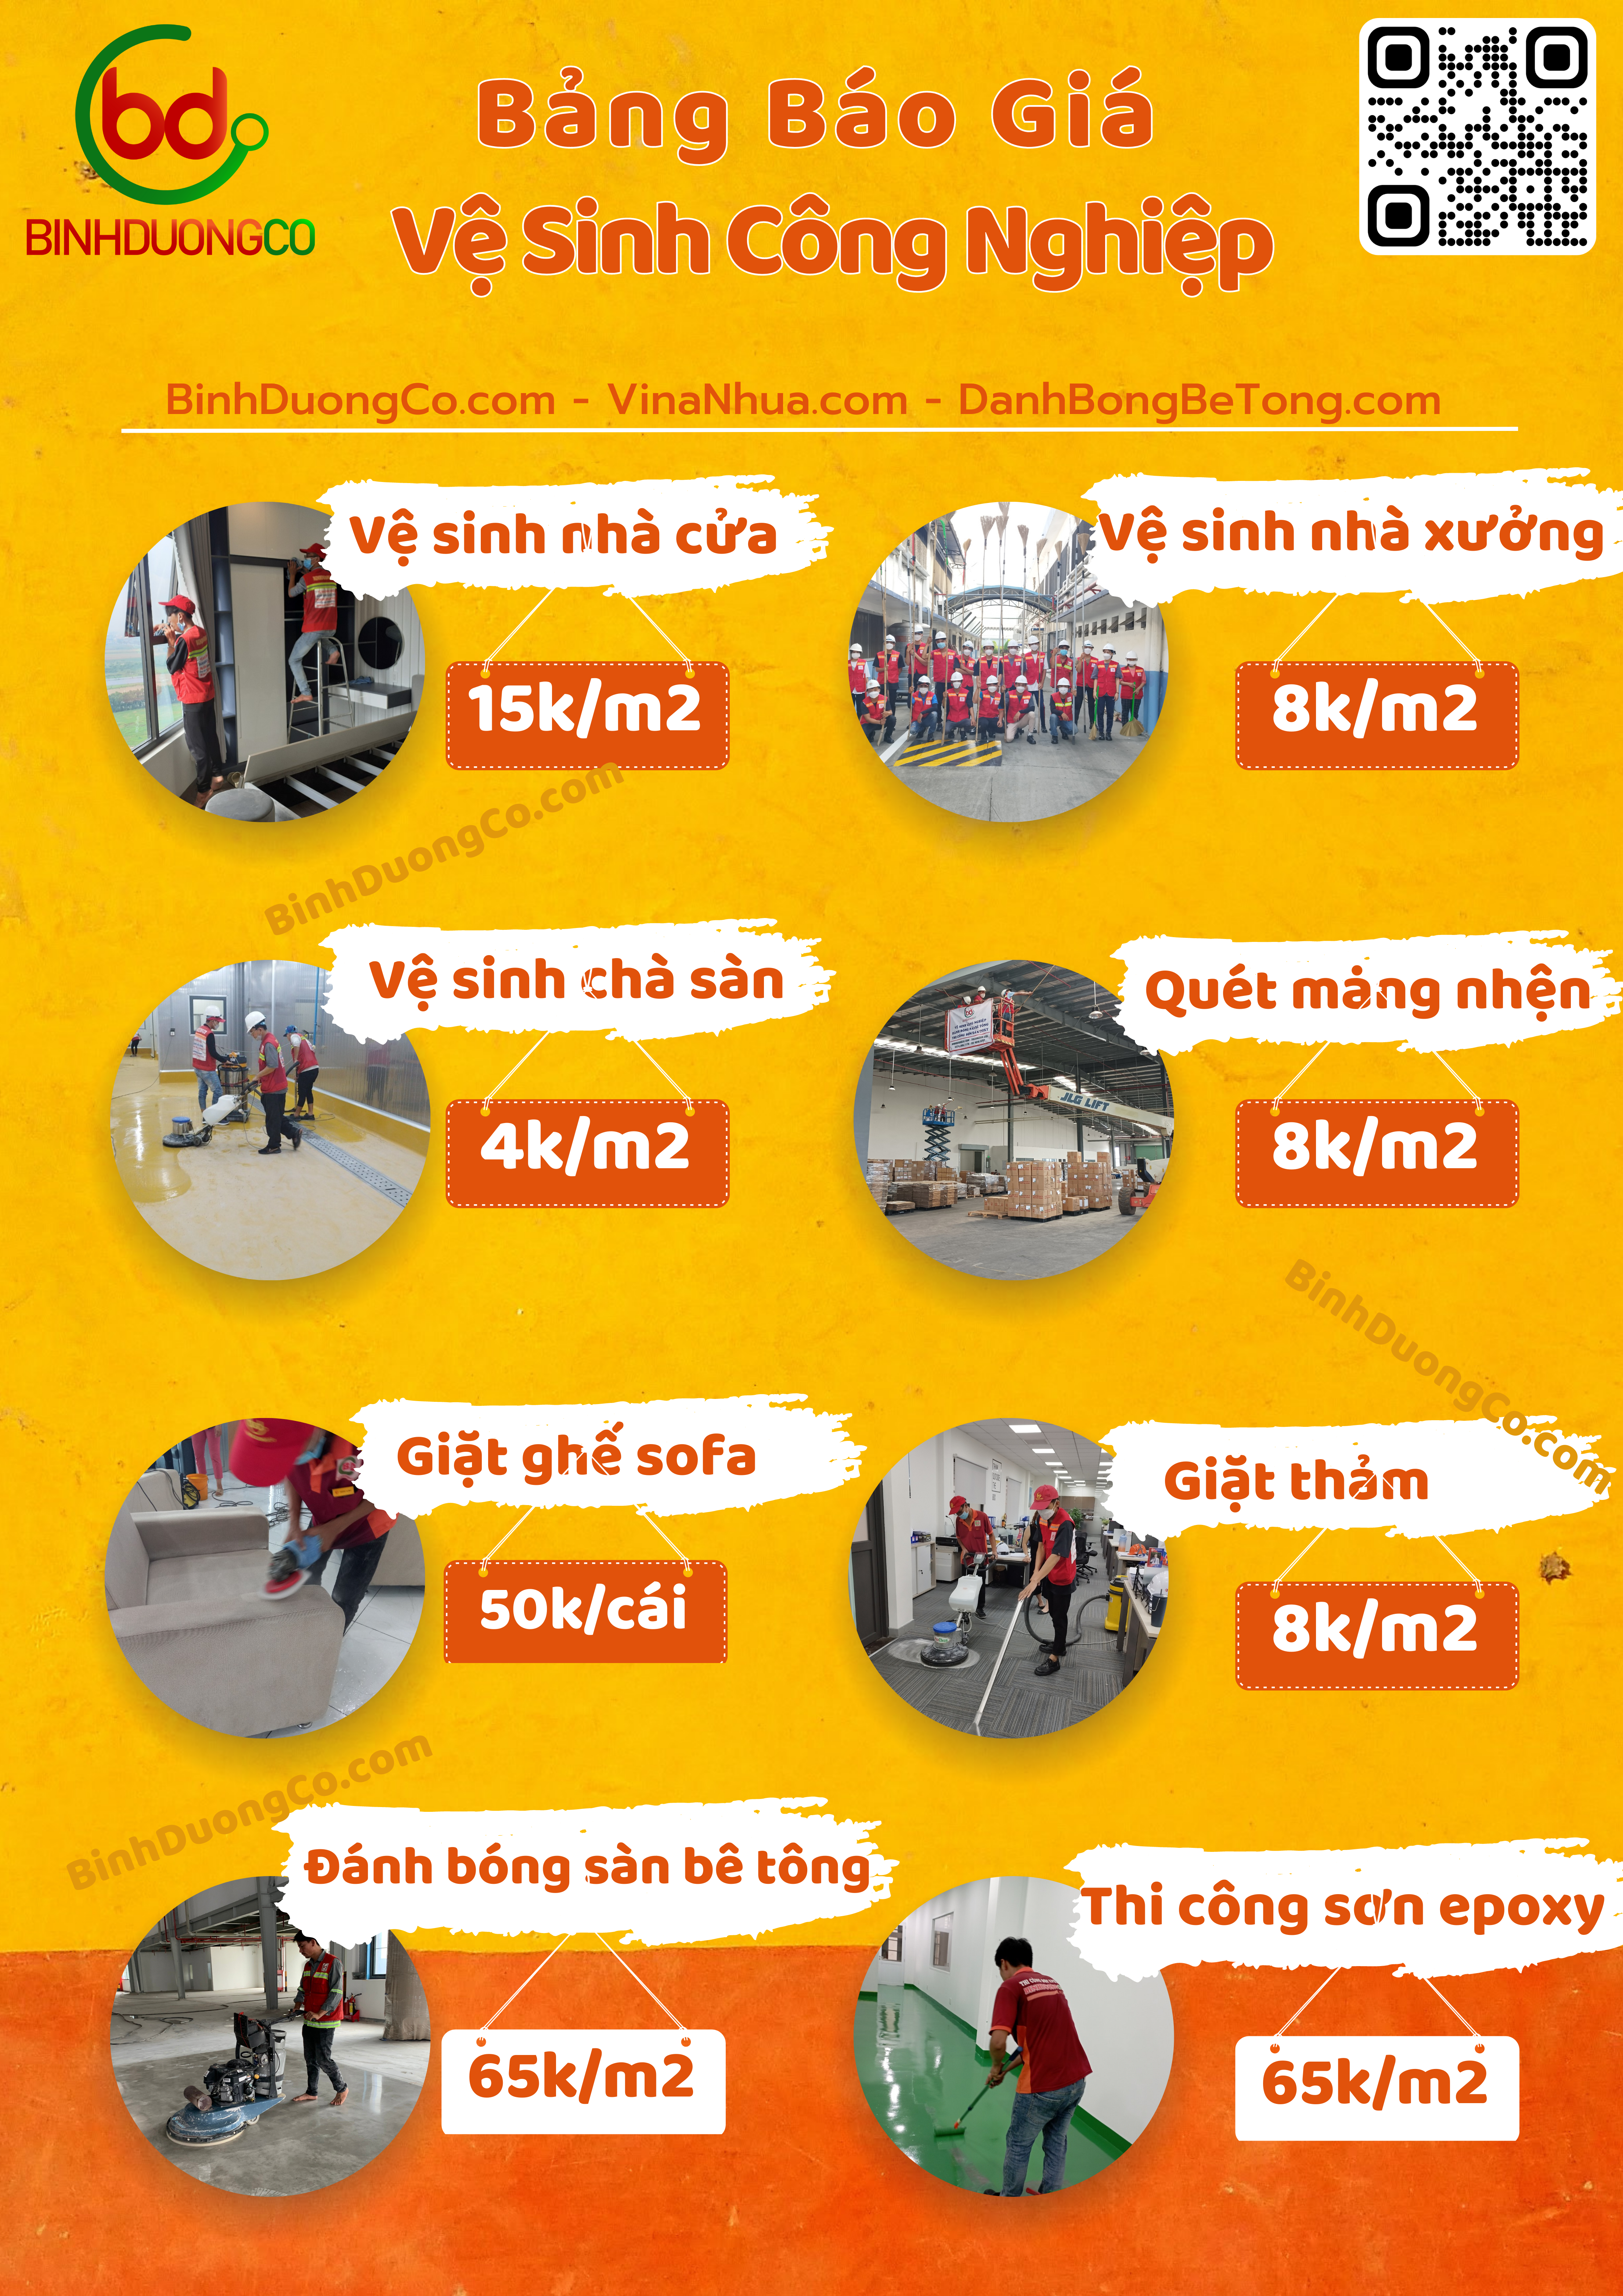 Bảng báo giá vệ sinh vệ sinh công nghiệp BinhDuongCo